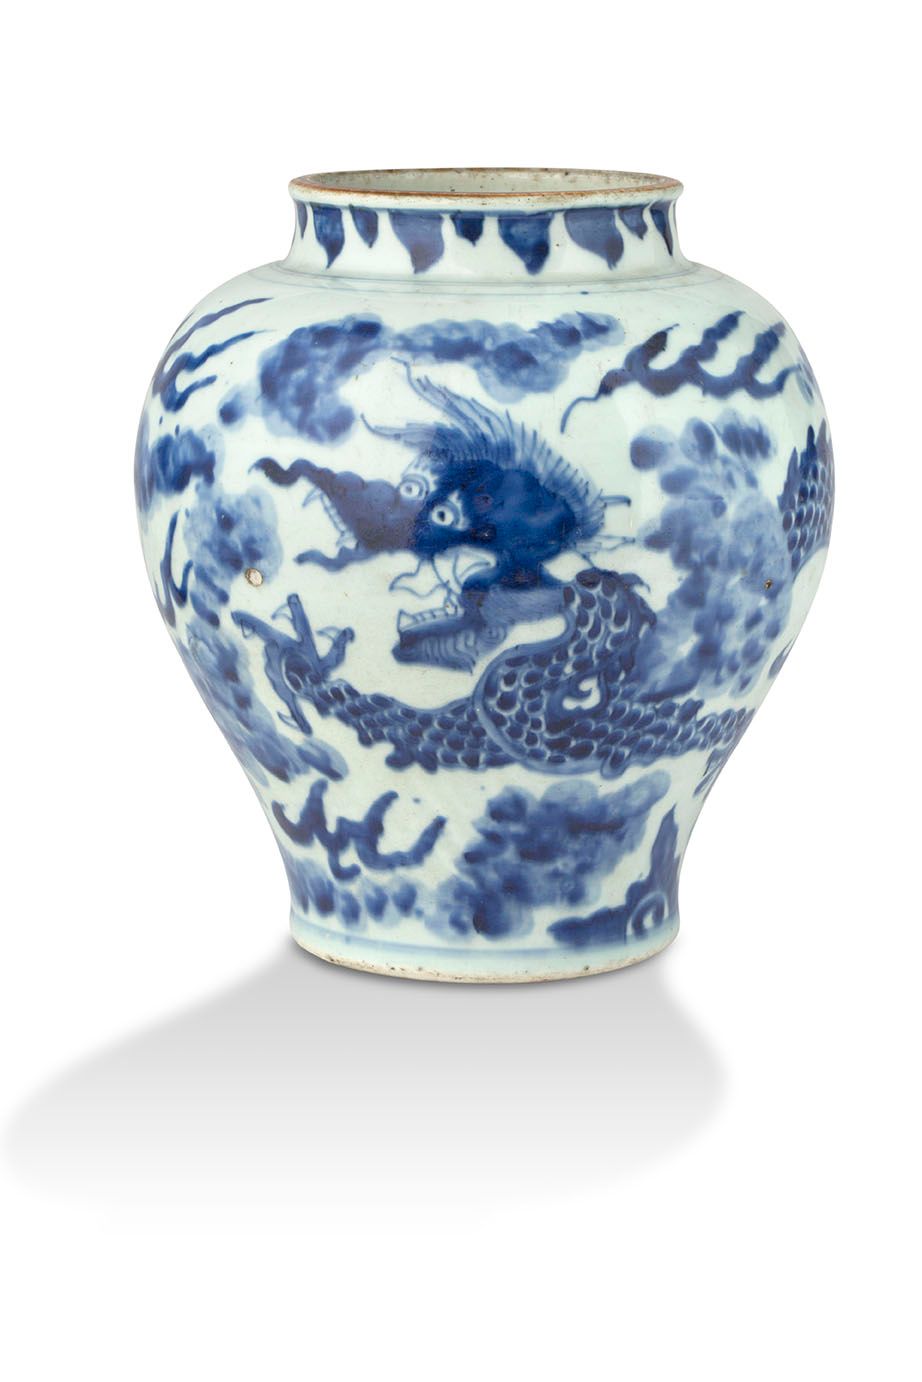 CHINE PÉRIODE TRANSITION, MILIEU DU XVIIe SIÈCLE Vase
In blue-white porcelain, d&hellip;